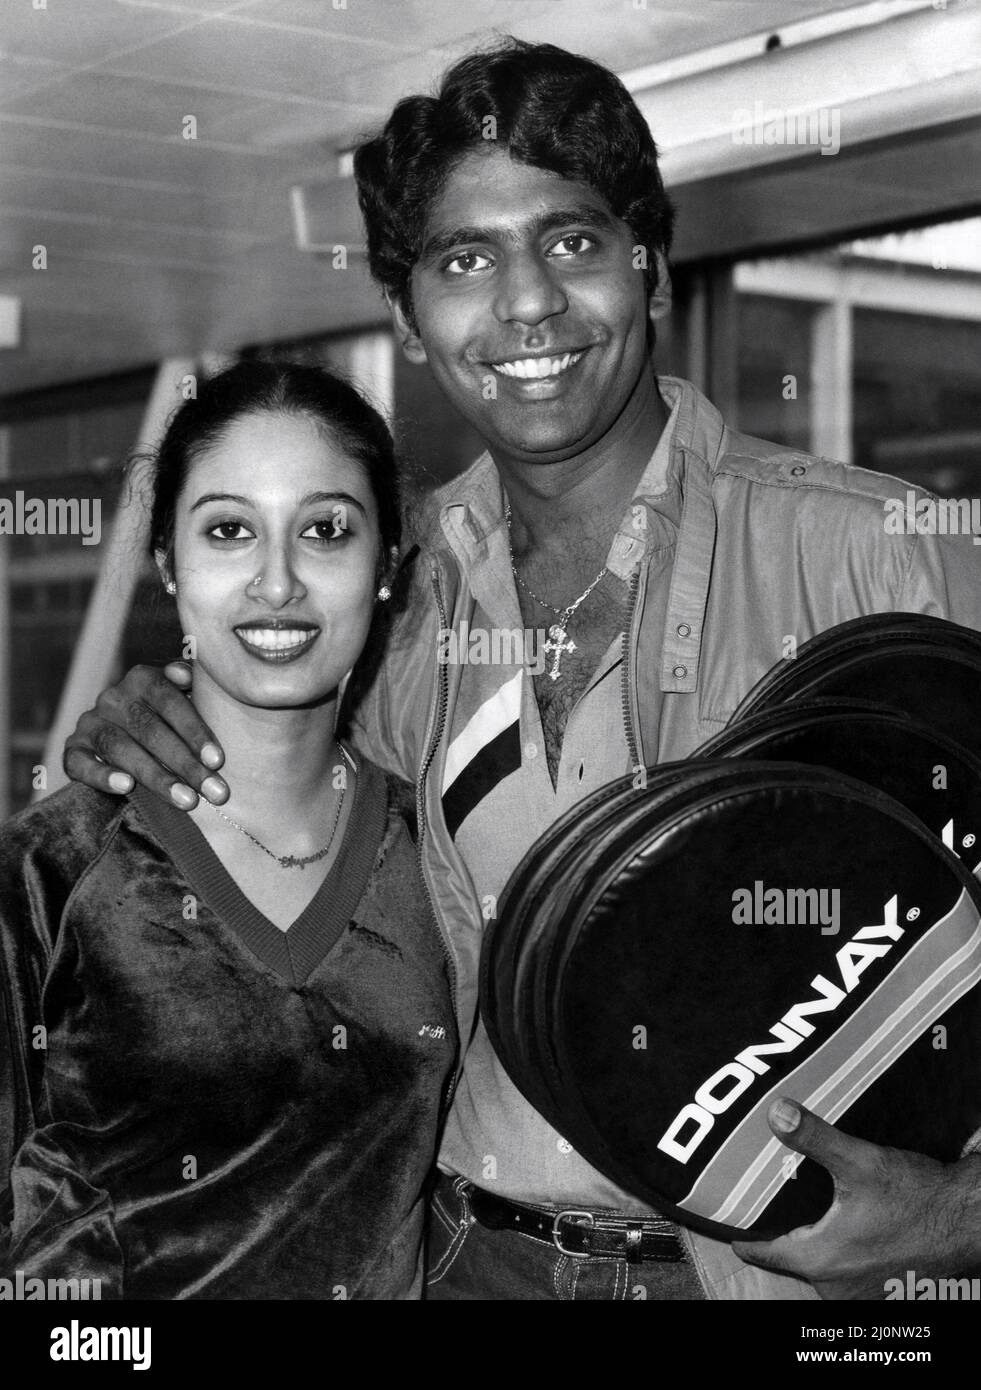 Milionario Indian Tennis star Vijay Amritraj, lasciando l'aeroporto di Heathrow oggi (Tues) con la sua sposa Shyamula di 21 anni, indossando jeans e con una borchia di diamante nel suo naso. Ora sono in viaggio verso New York. Shyamula è il prodotto di un matrimonio organizzato recentemente in India Foto Stock